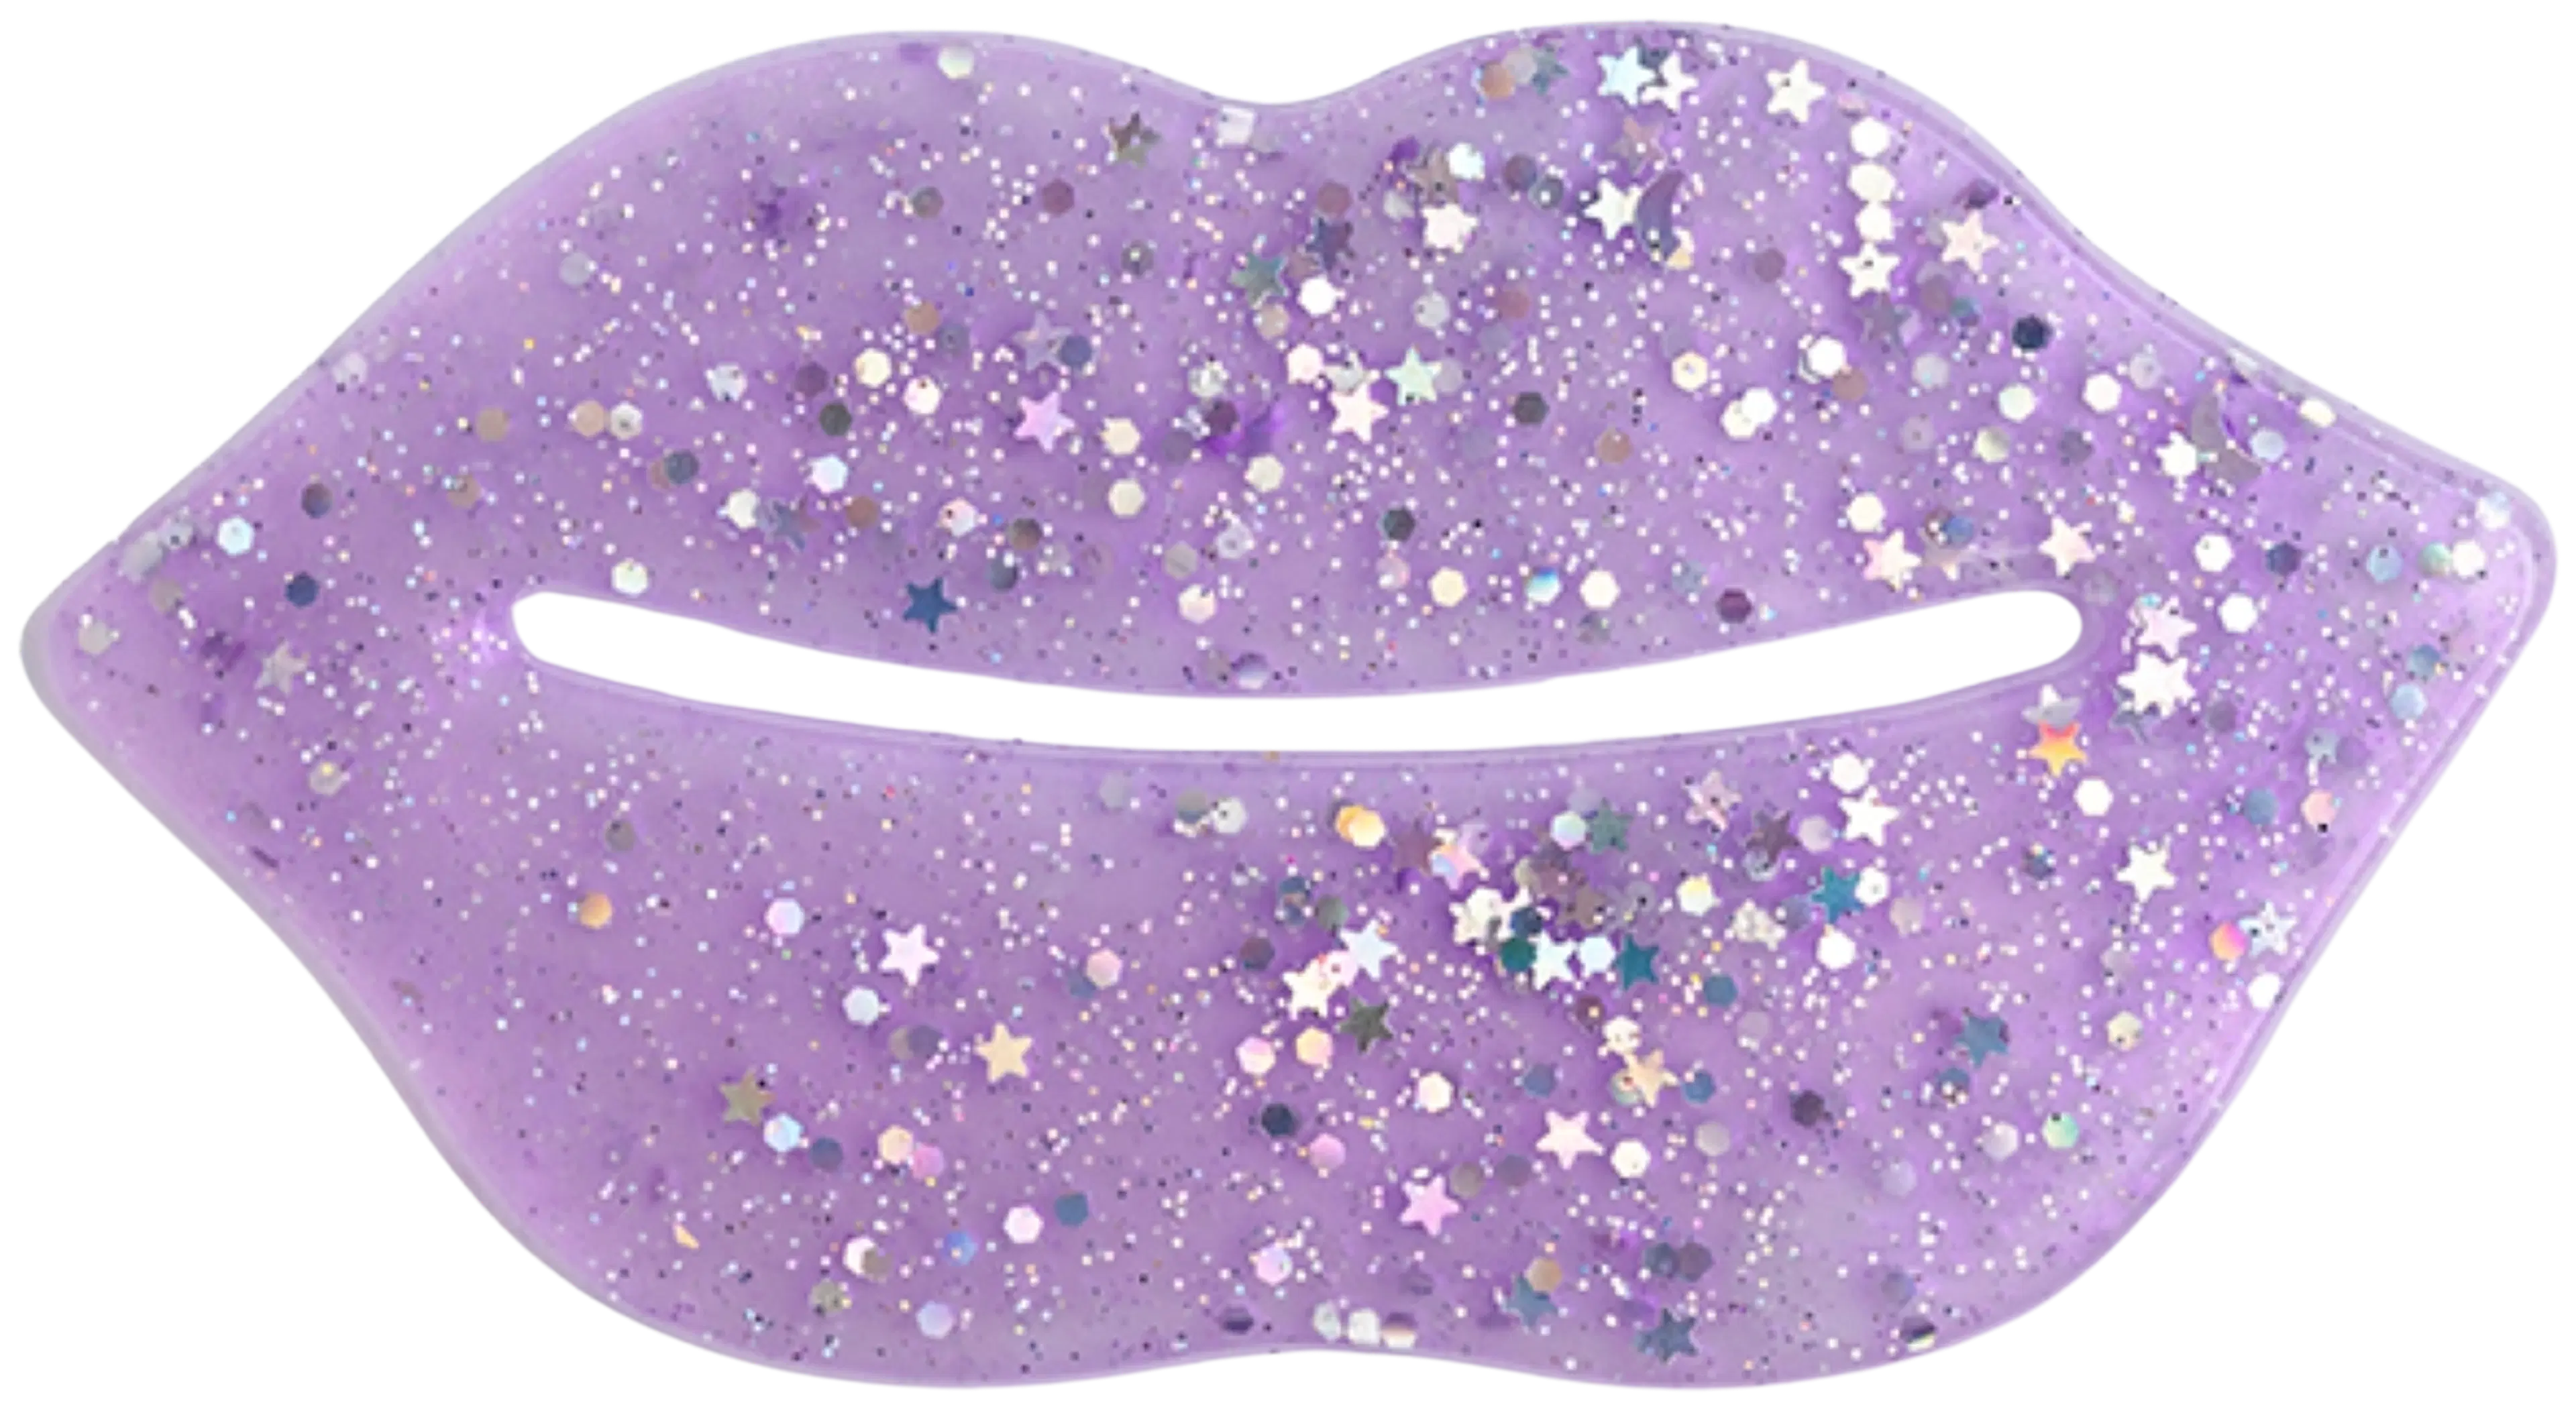 IDC Institute Glitter huulinaamio Purple 1 kpl